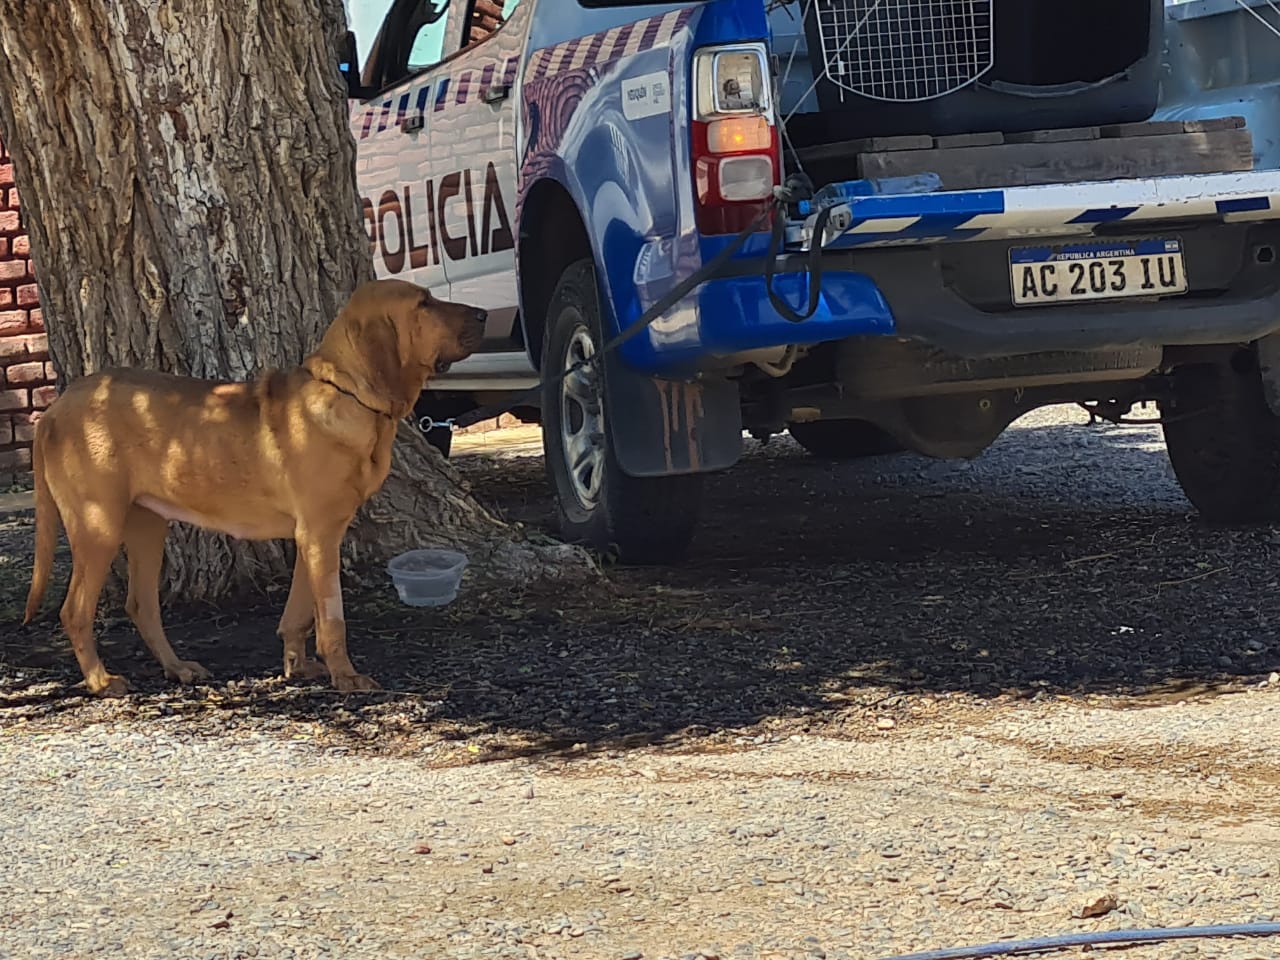 Uno de los perros que se sumará a la búsqueda del policía desaparecido en Cutral Co. Foto: Andrea Vazquez